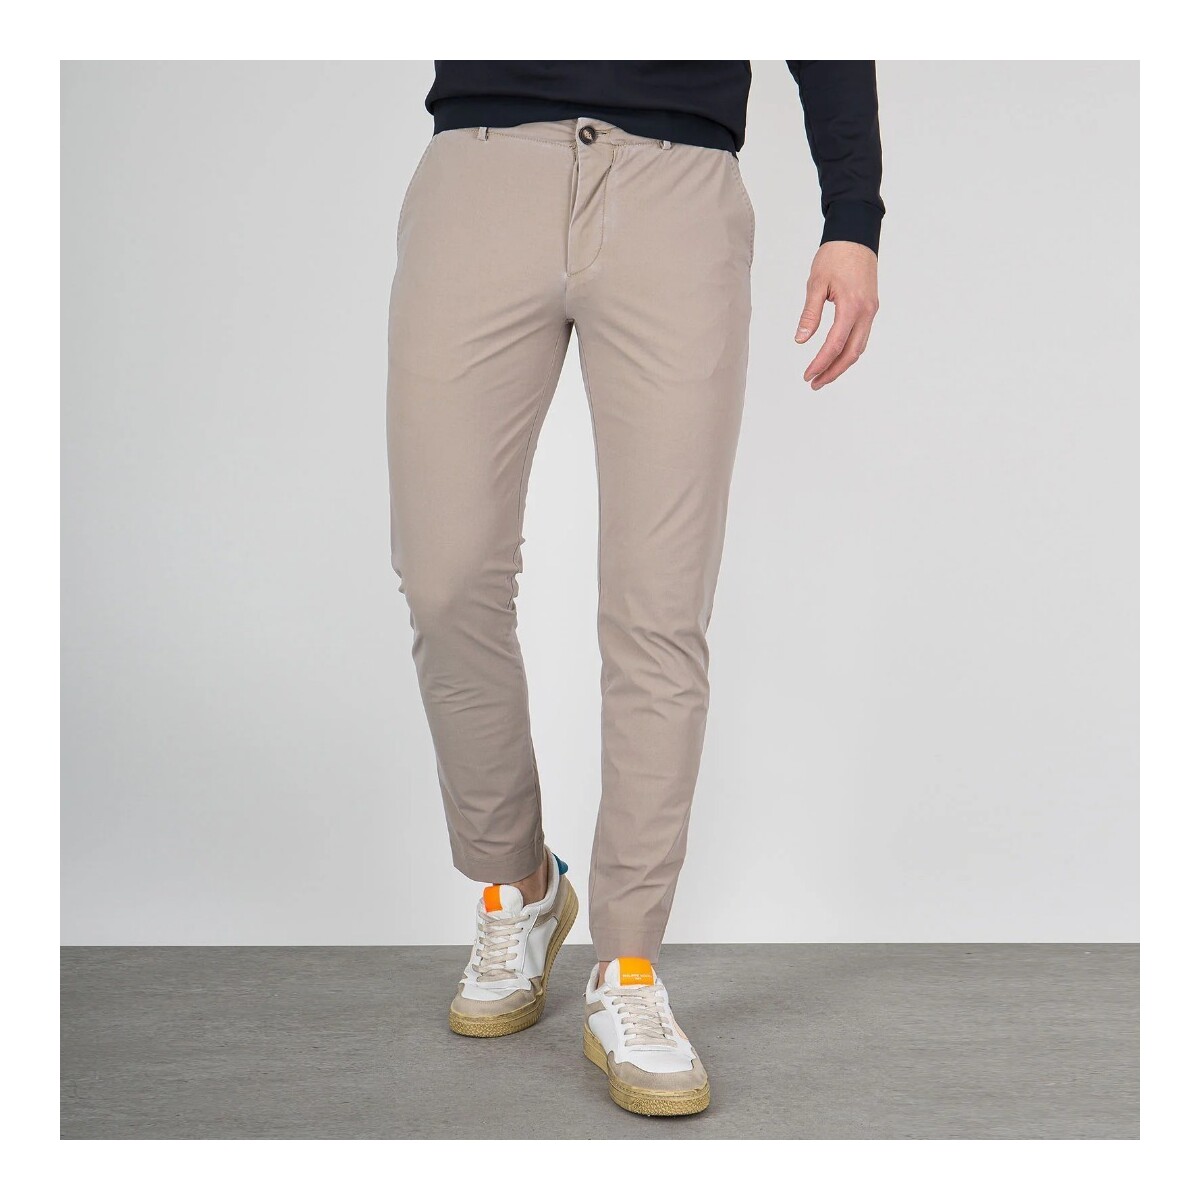 Vêtements Homme Pantalons Rrd - Roberto Ricci Designs S23237 Beige